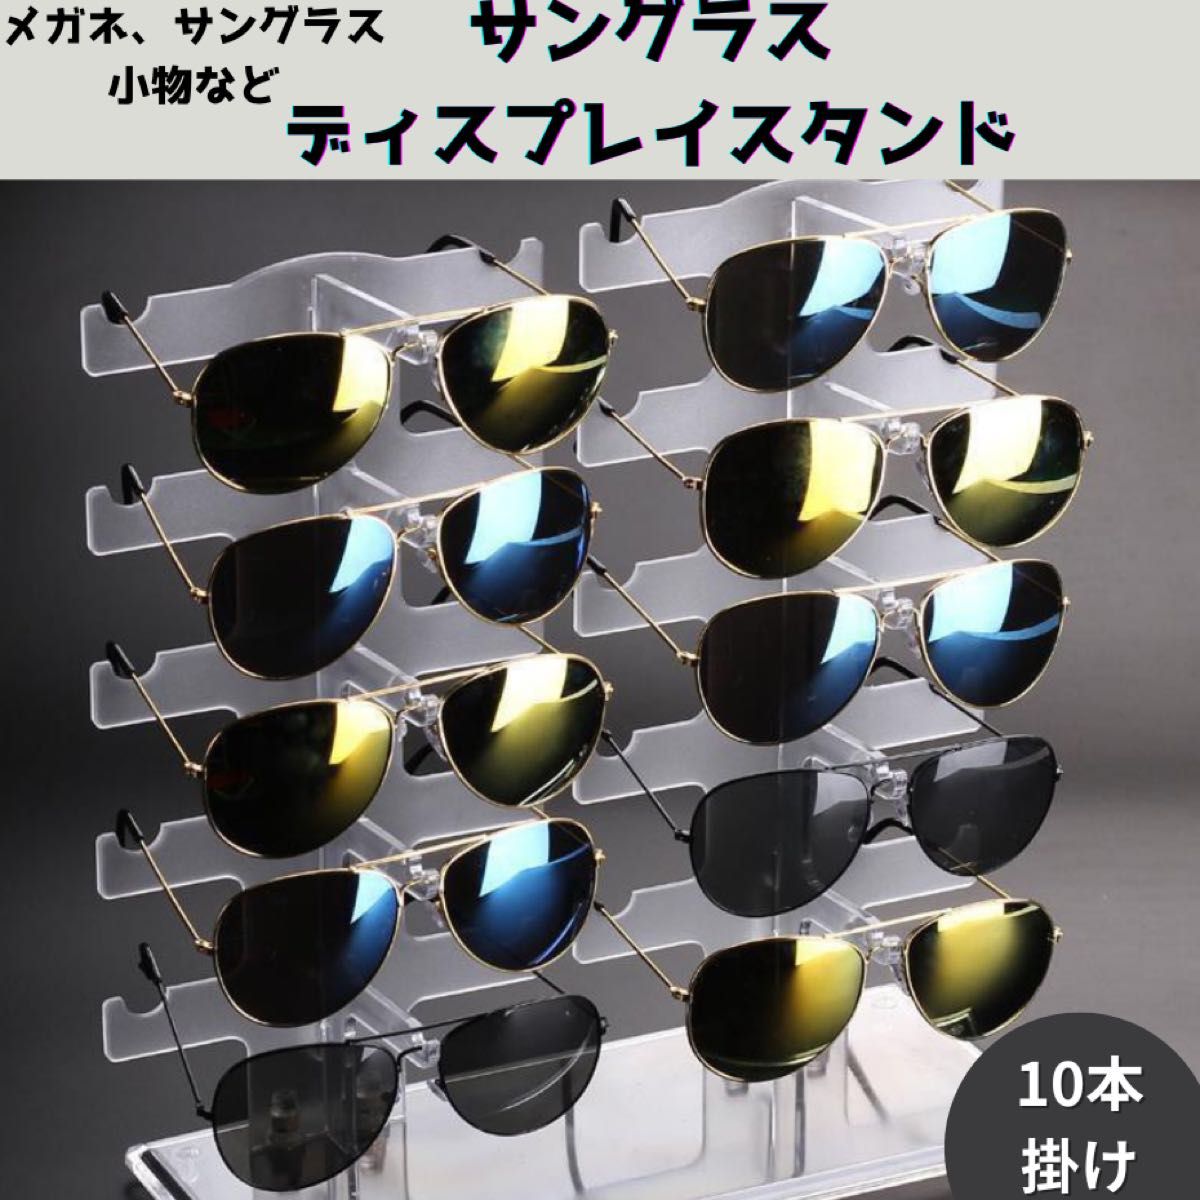 【新品未使用アウトレット】サングラス スタンド 眼鏡 収納 ディスプレイ ショップ風 10本 メガネスタンド ラック